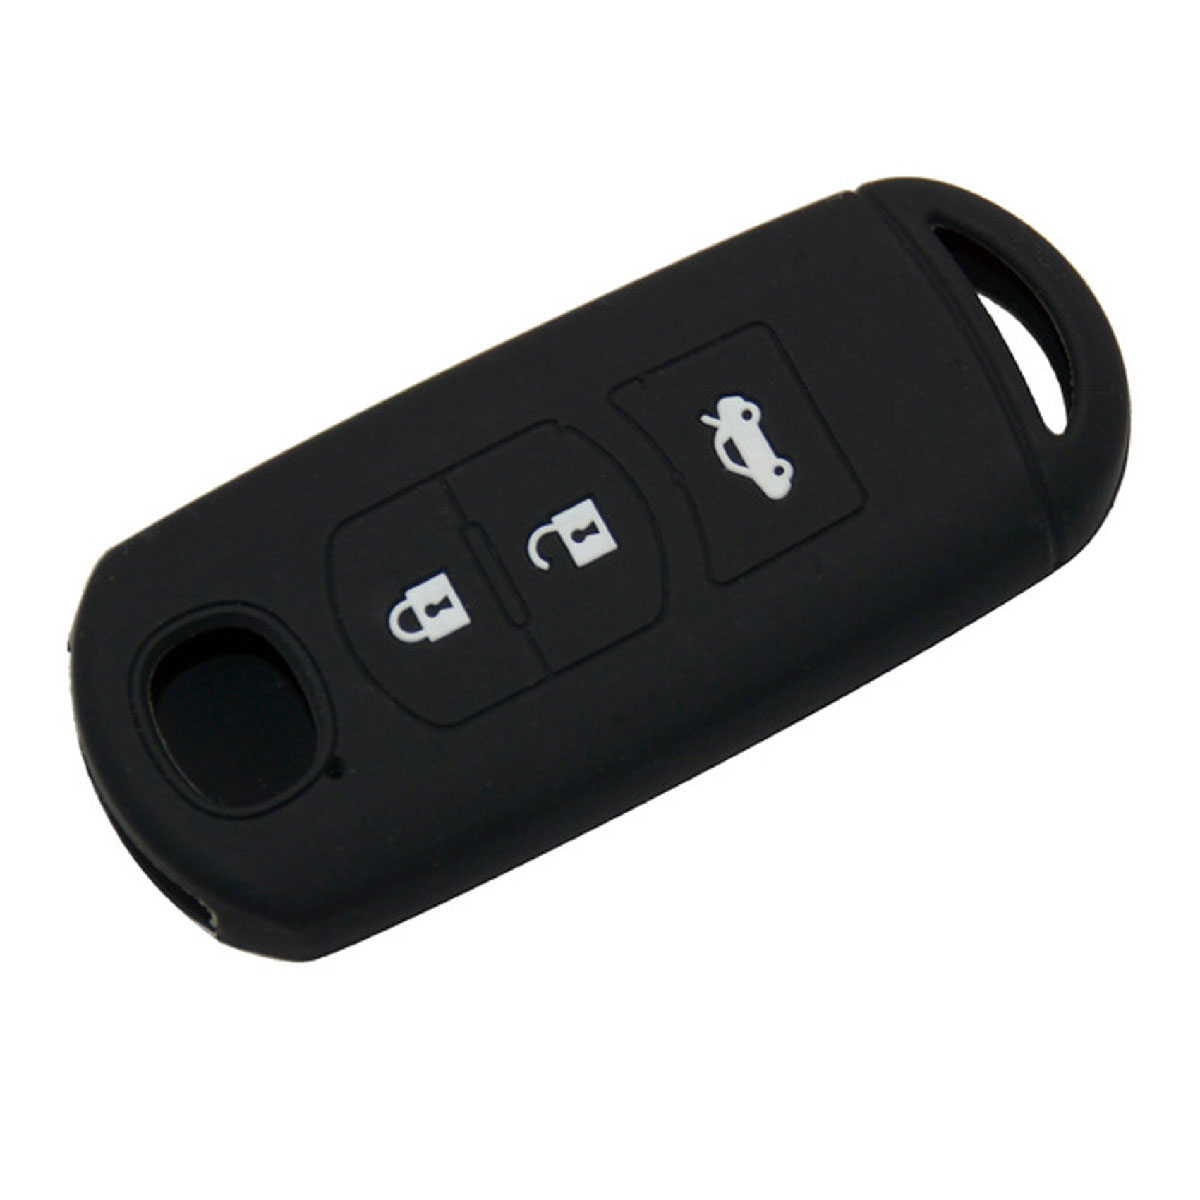 Чехол автосигнализации MAZDA 2, 3, 5, 6, 8, Atenza CX5 CX-7 CX-9 MX-5 RX, на 3 кнопки, силиконовая, цвет черный.